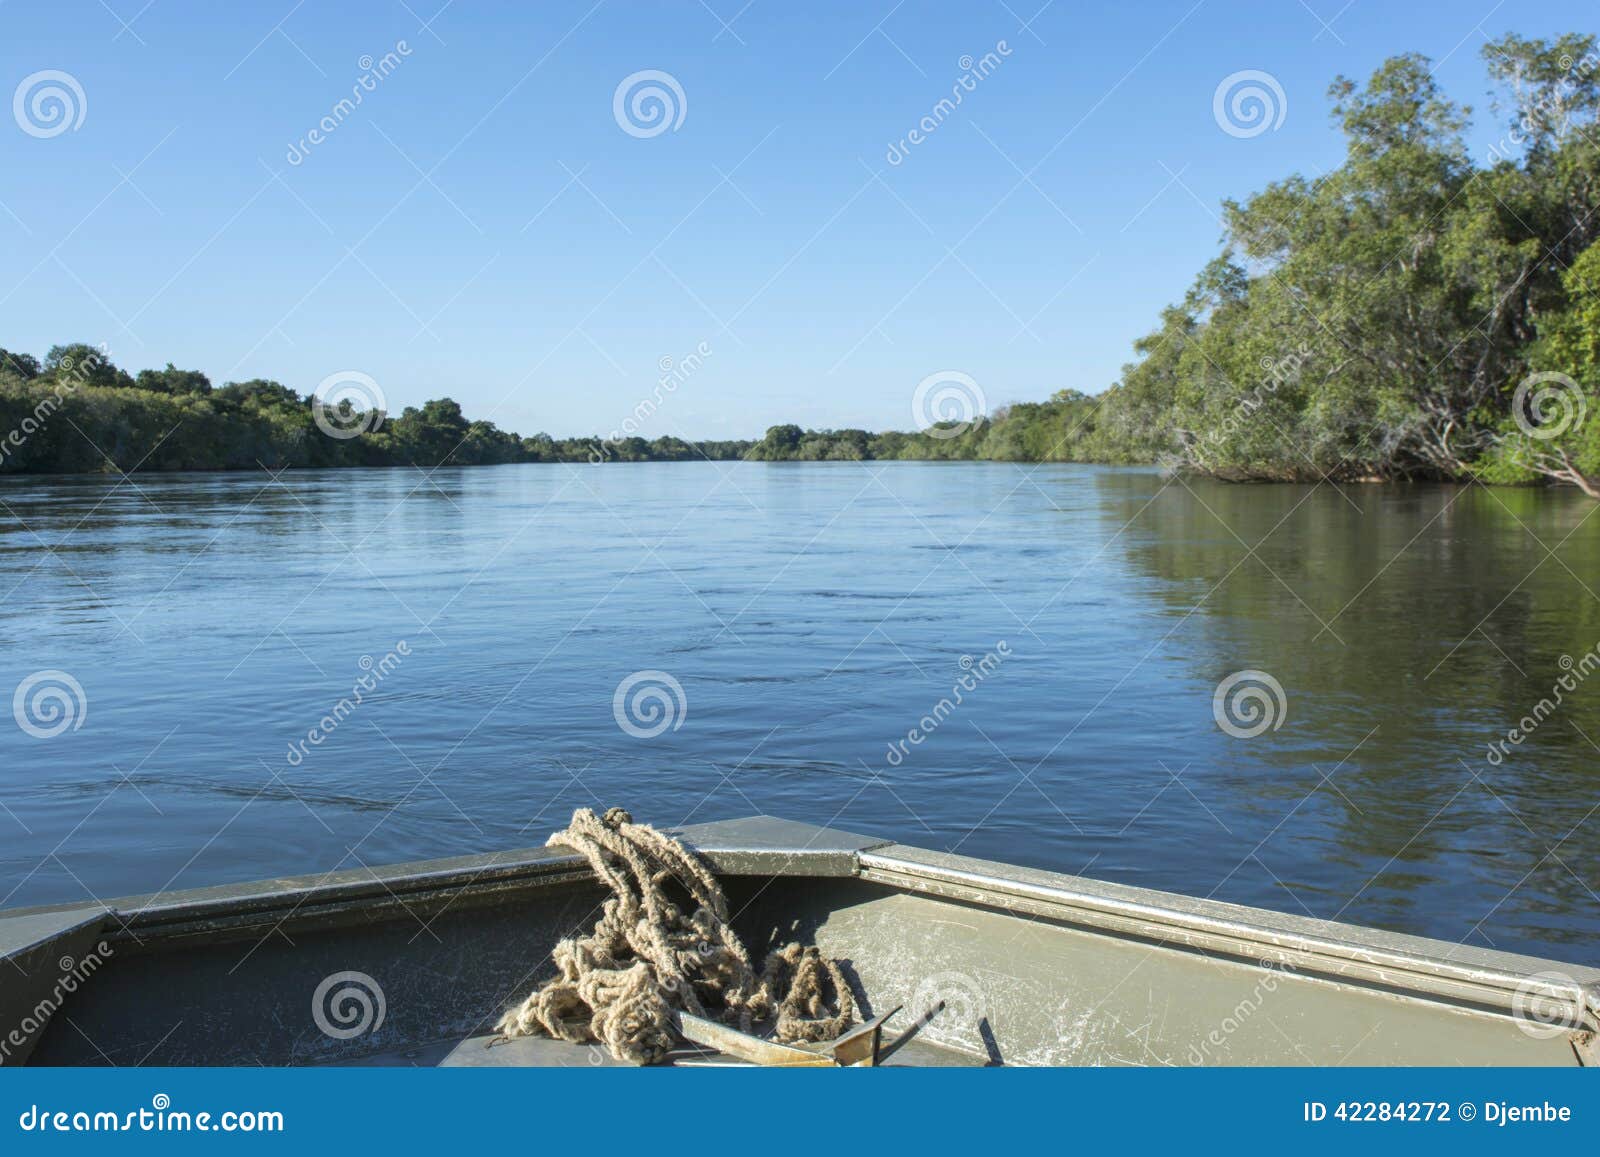 zambezi river